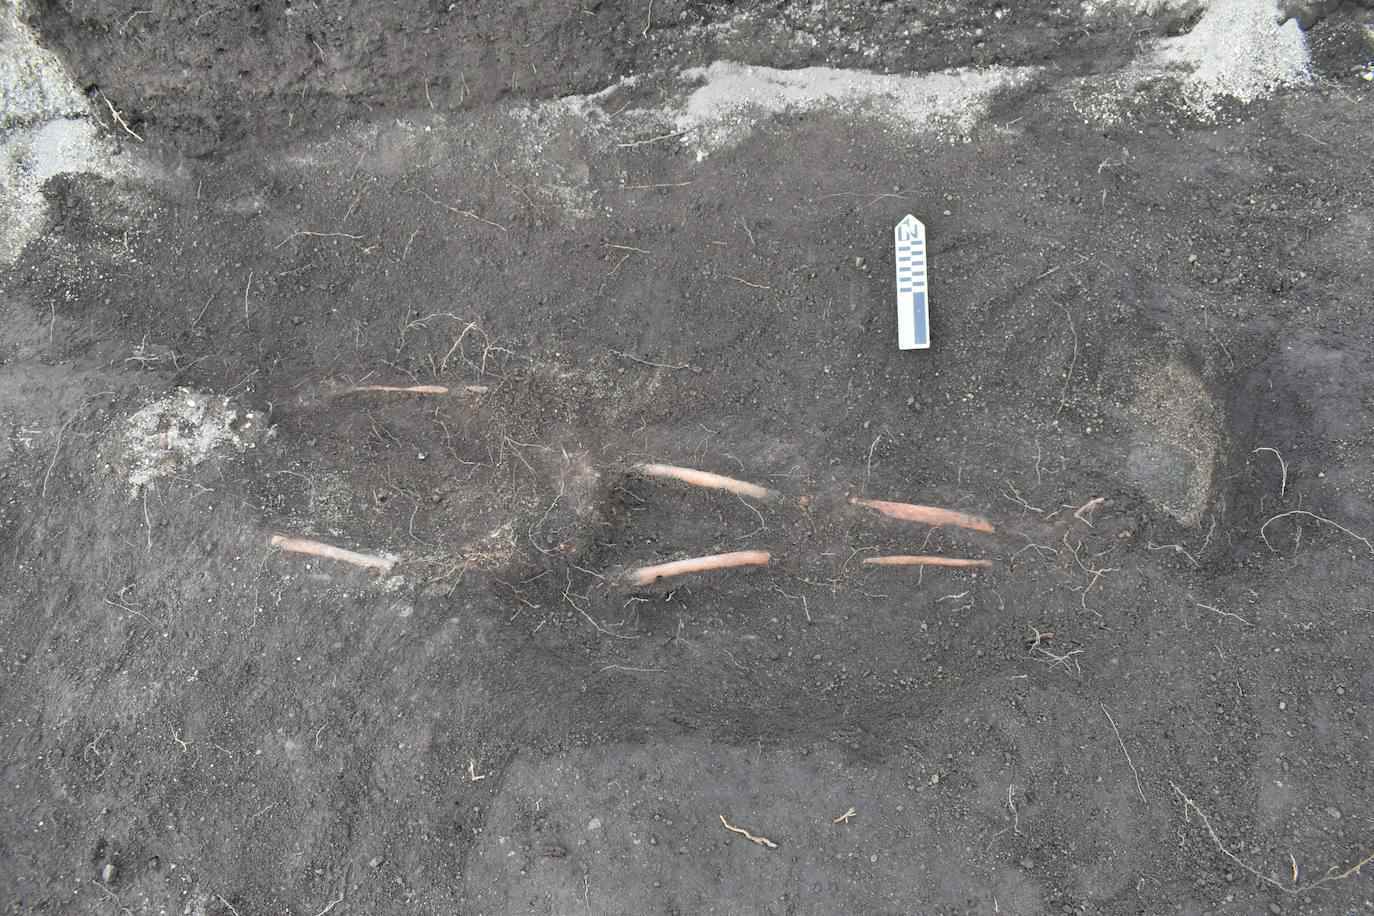 De overblijfselen, die vijf eeuwen oud zijn, werden gevonden in Mulaló, een van de tien landelijke parochies van het kanton Latacunga, op een hoogte van 2,900 meter (EFE / Byron Ortiz / Mulaló Archaeological Project - Salatilín).